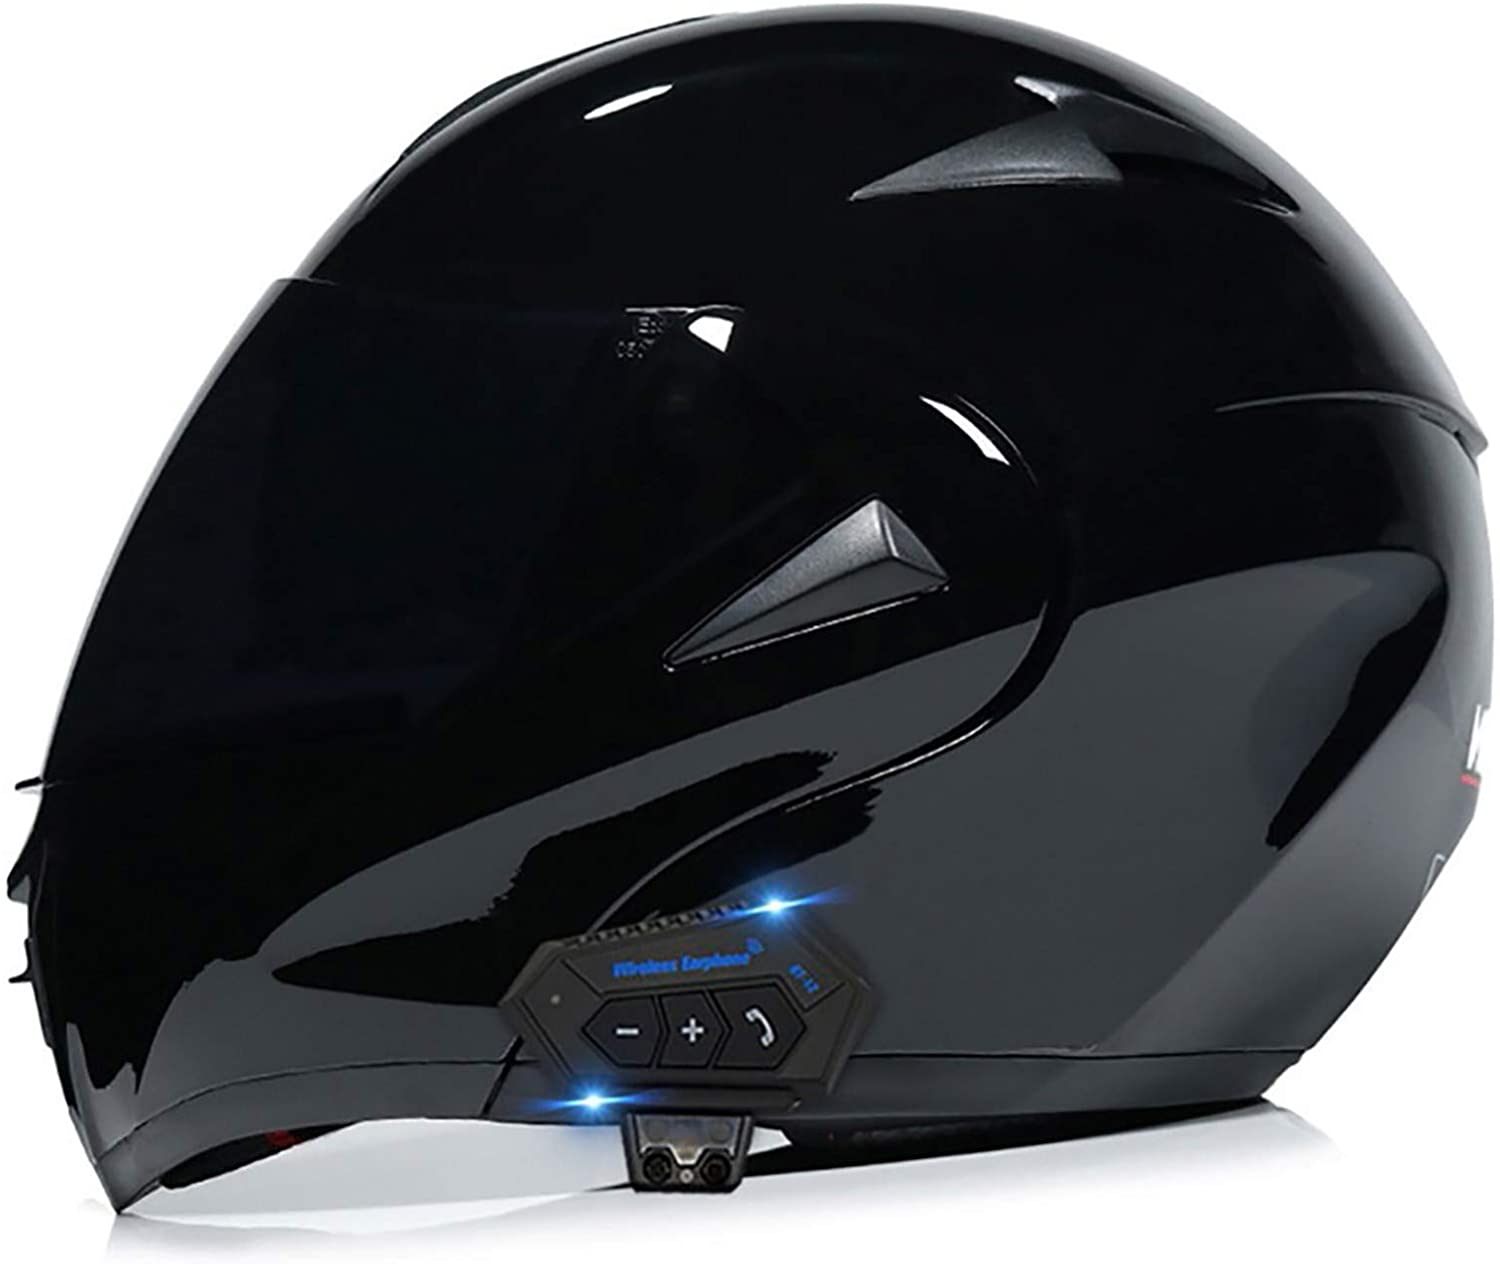 TBTBZXCV Motorcycle Bluetooth Helmet